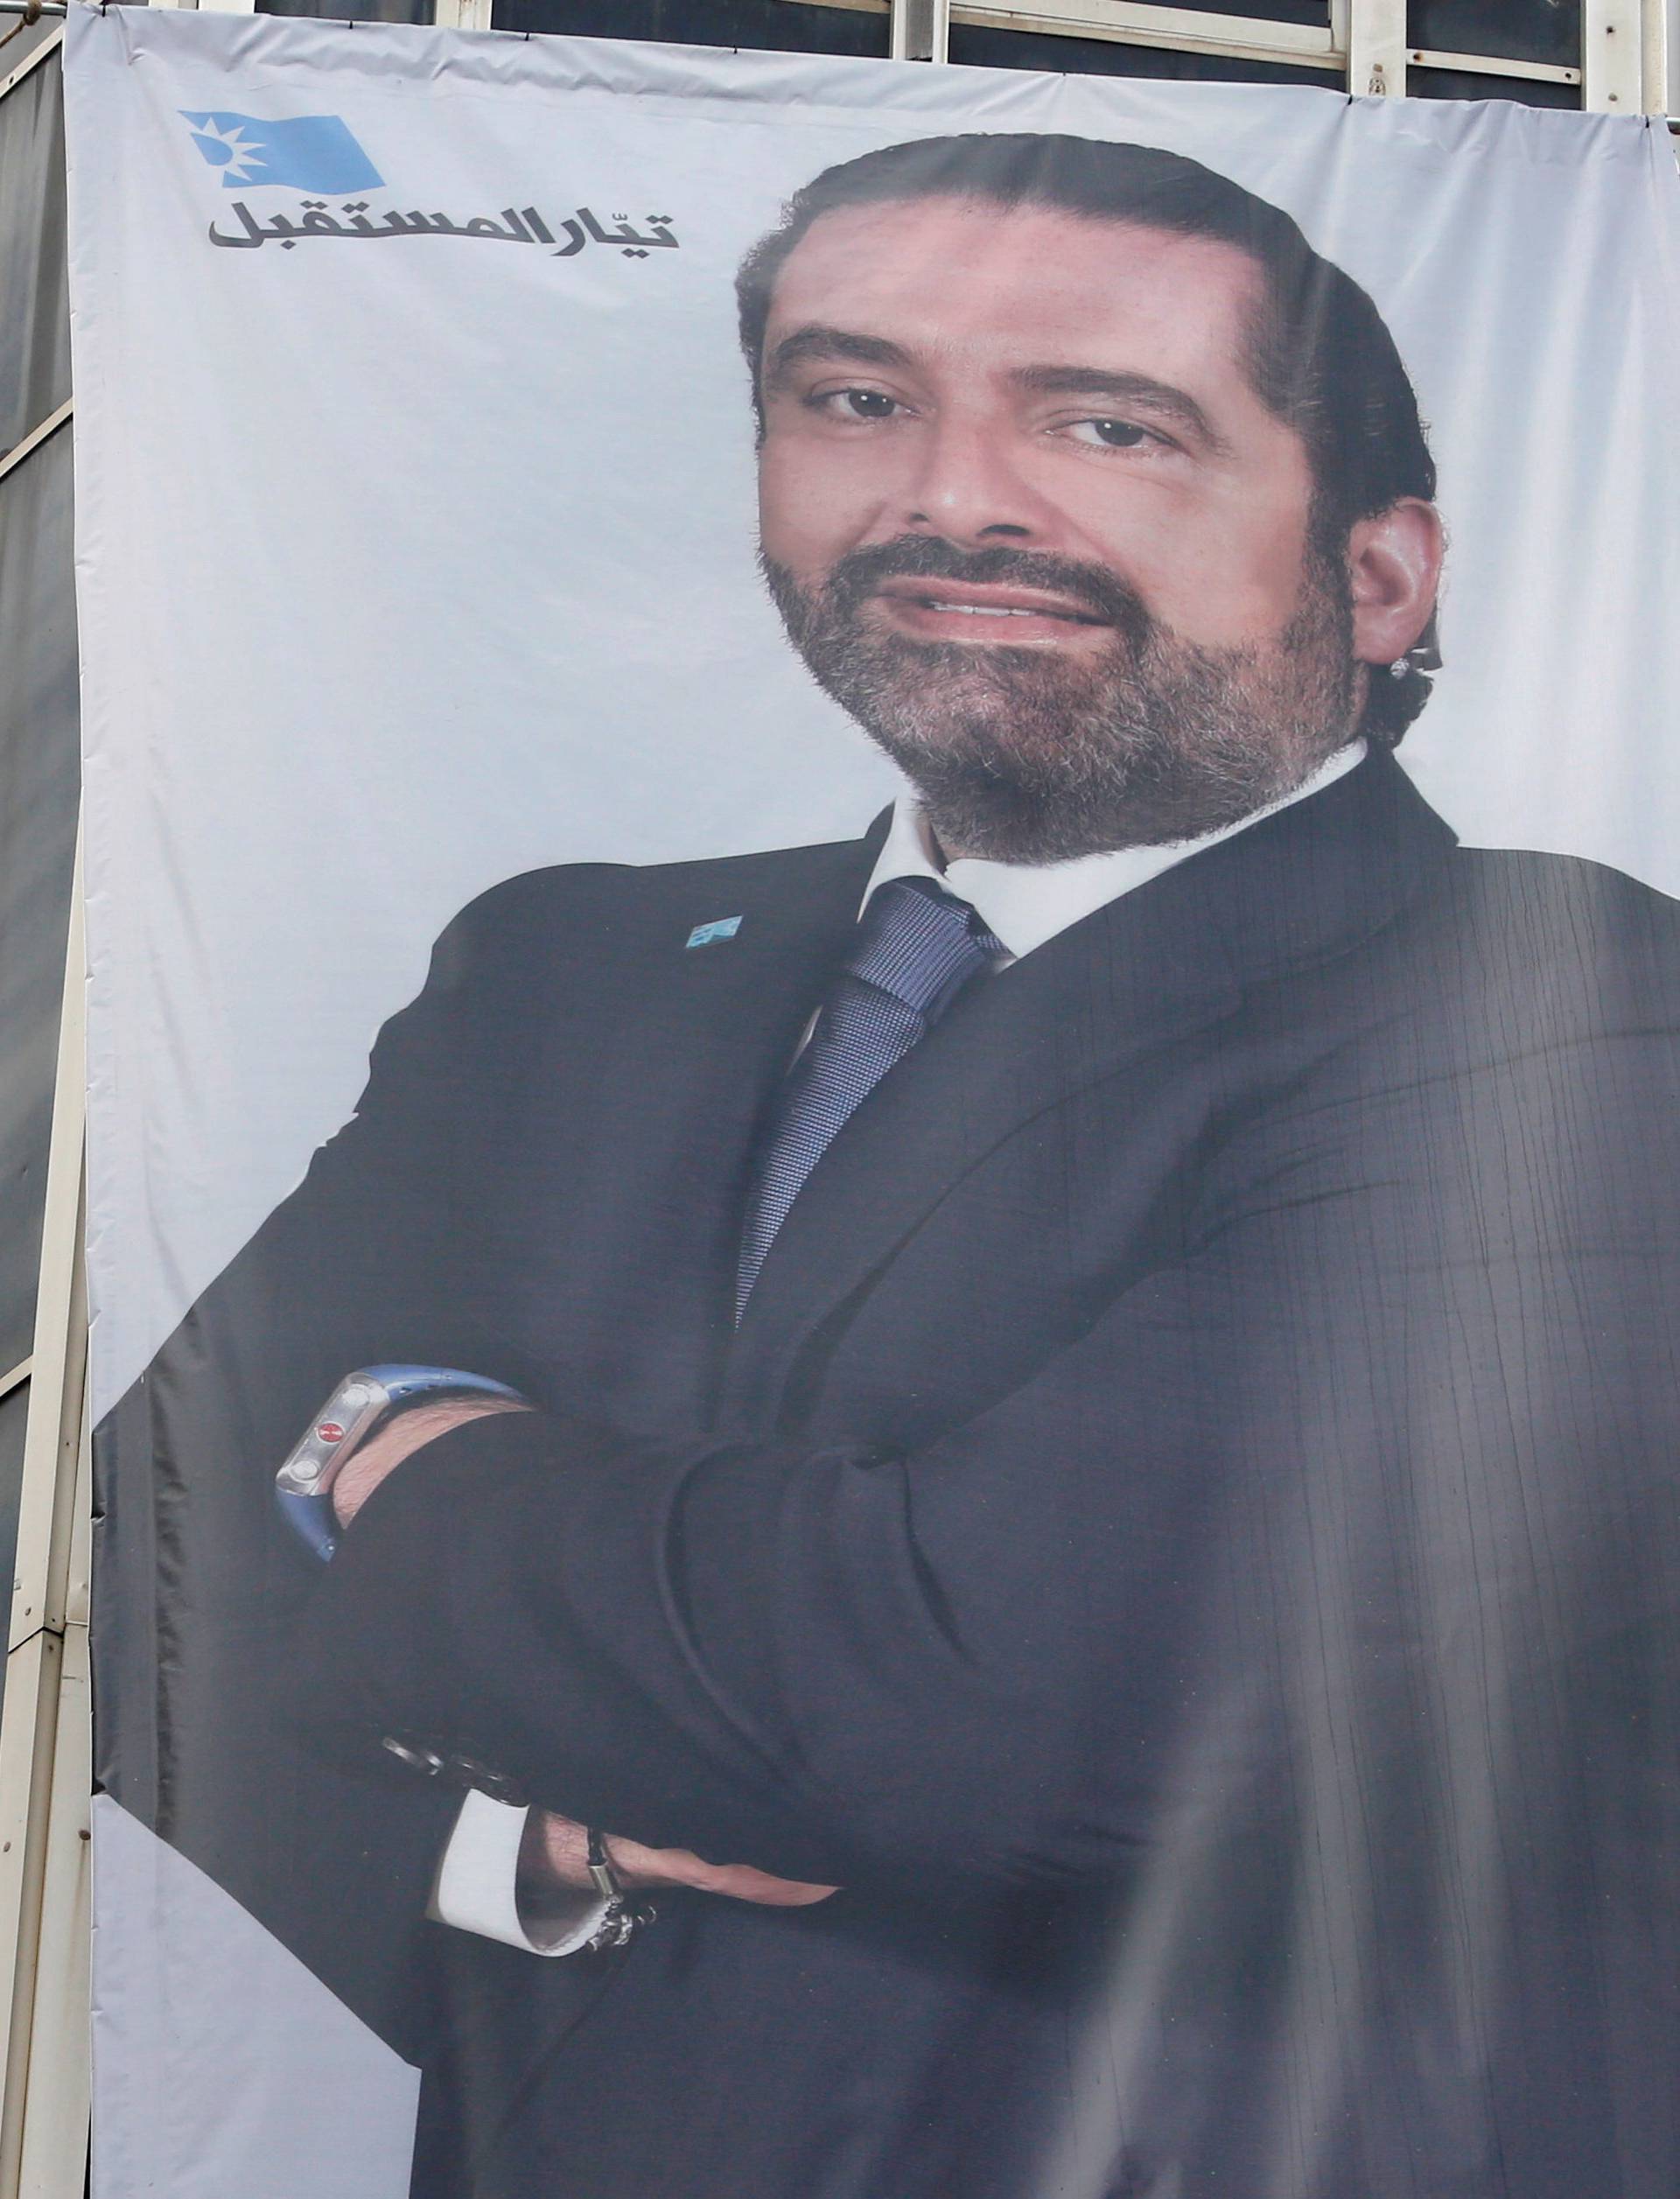 Lebanese PM Saad al-Hariri campaign poster hangs on building in Beirut